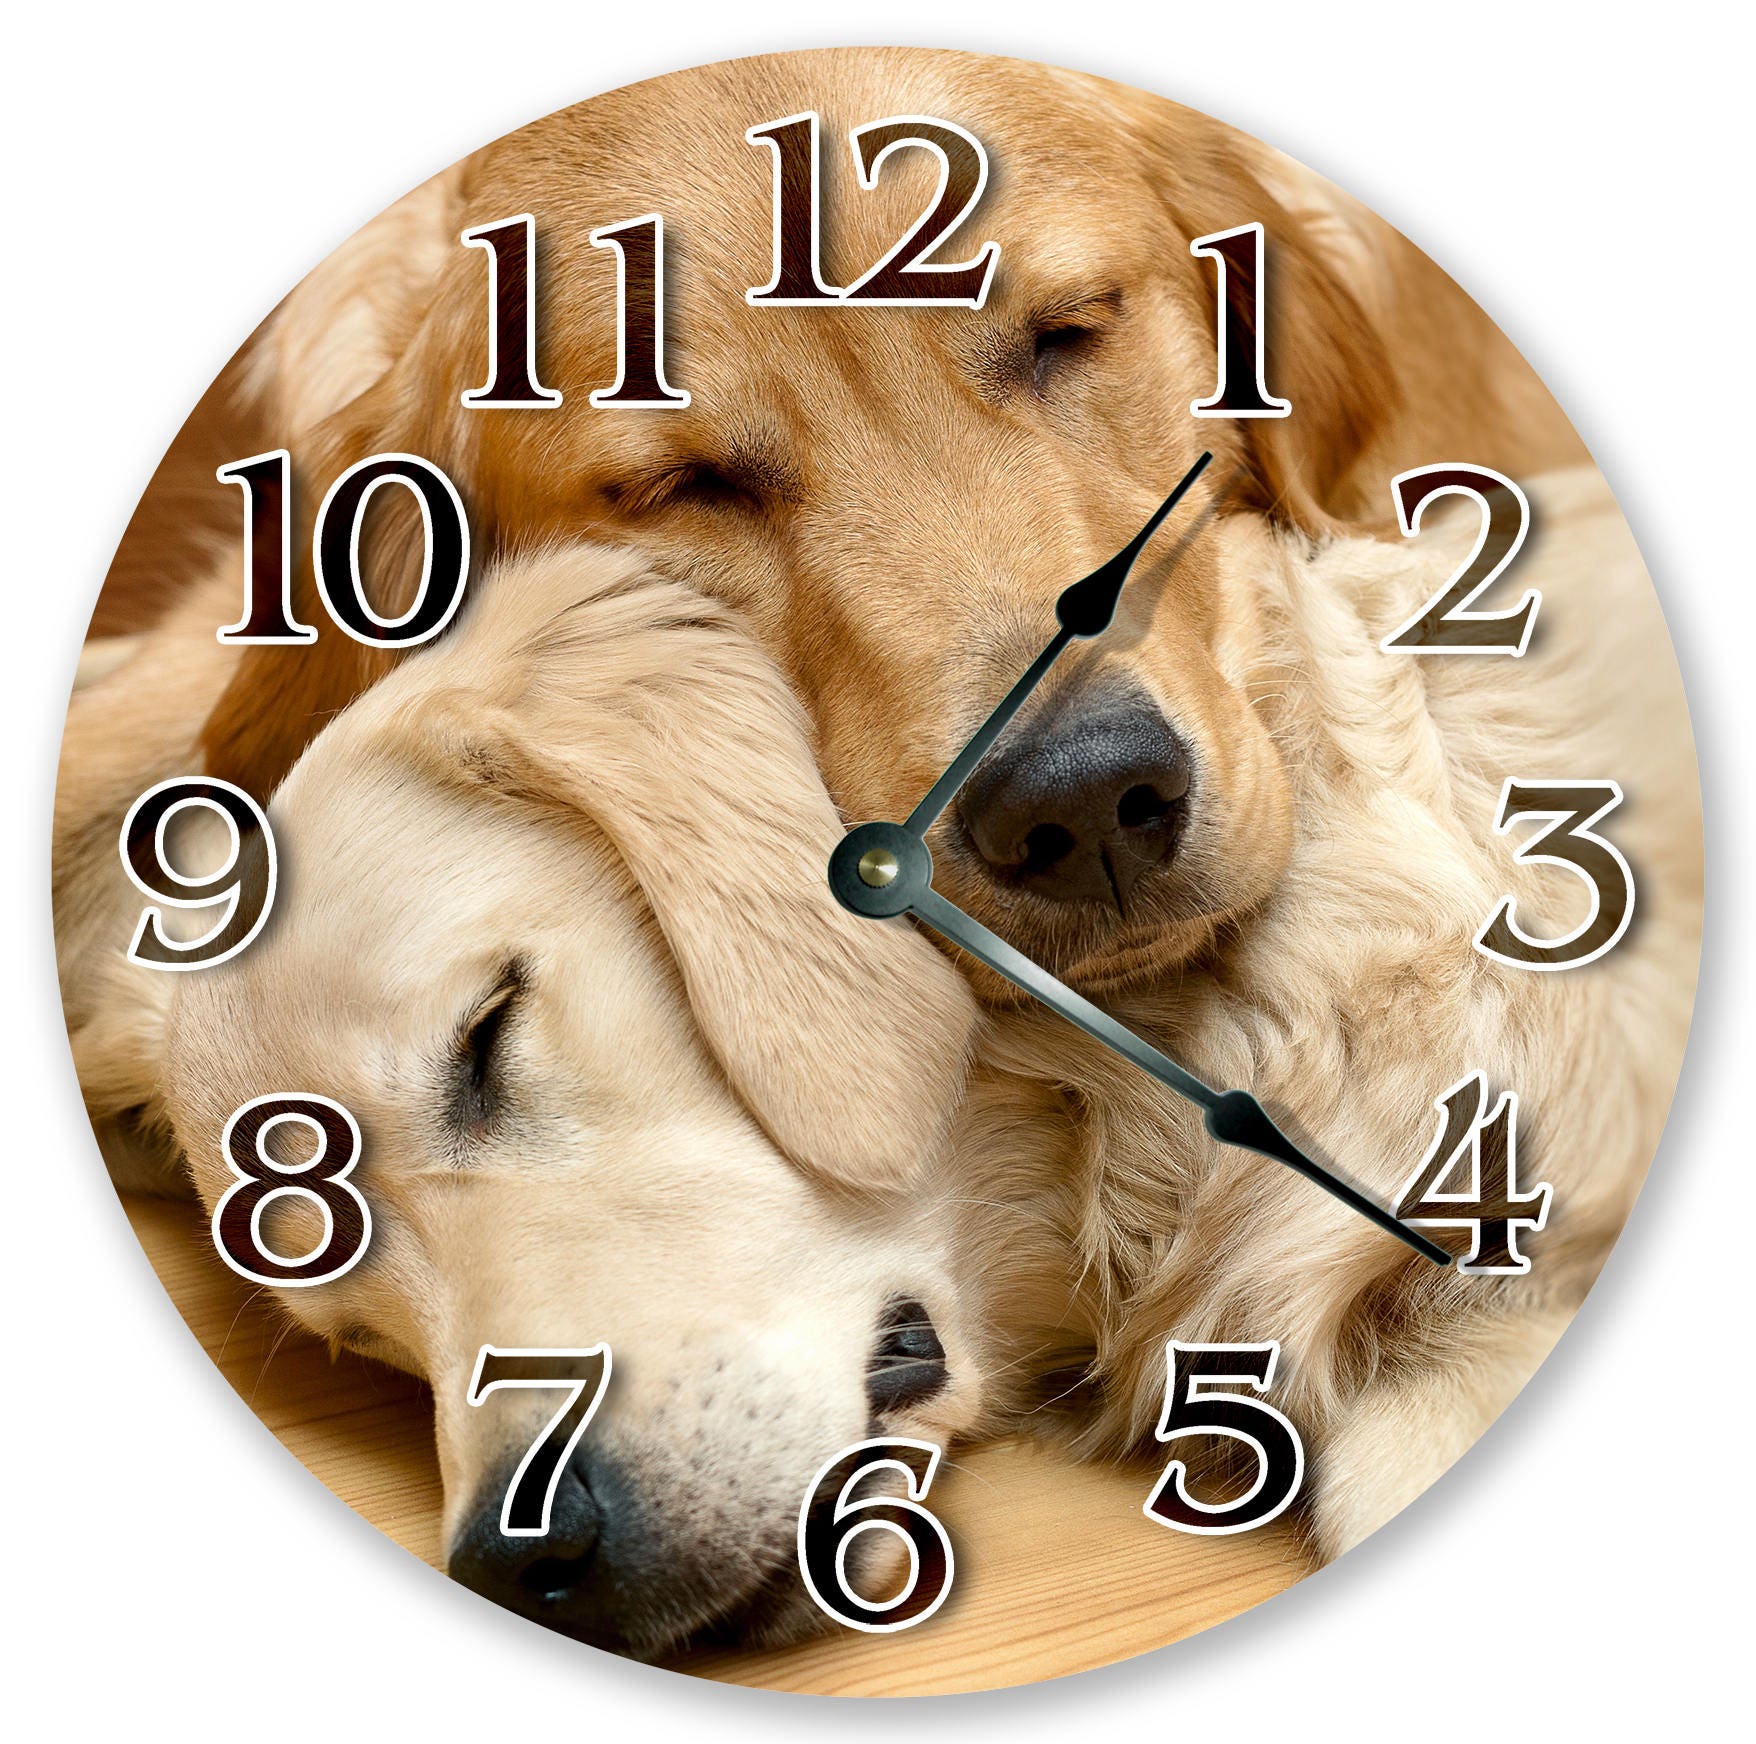 Часы про животных. Часы животные. Часы по животным. Восточные часы с животными. Животное с часами.